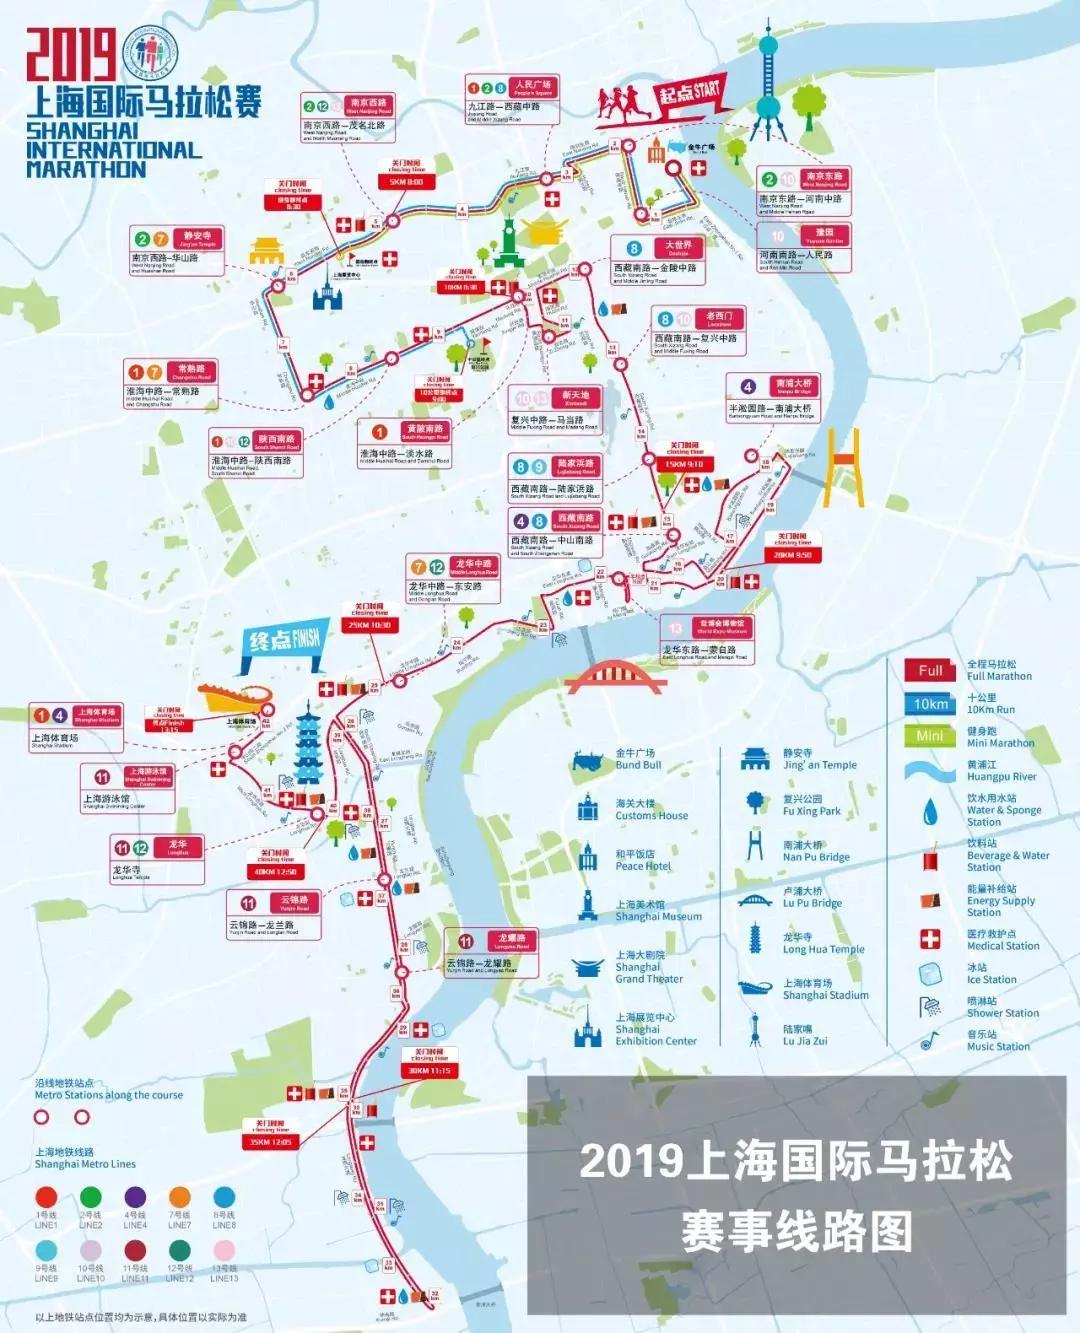 2014-2019,来看6届上海马拉松路线图都有哪些不同?